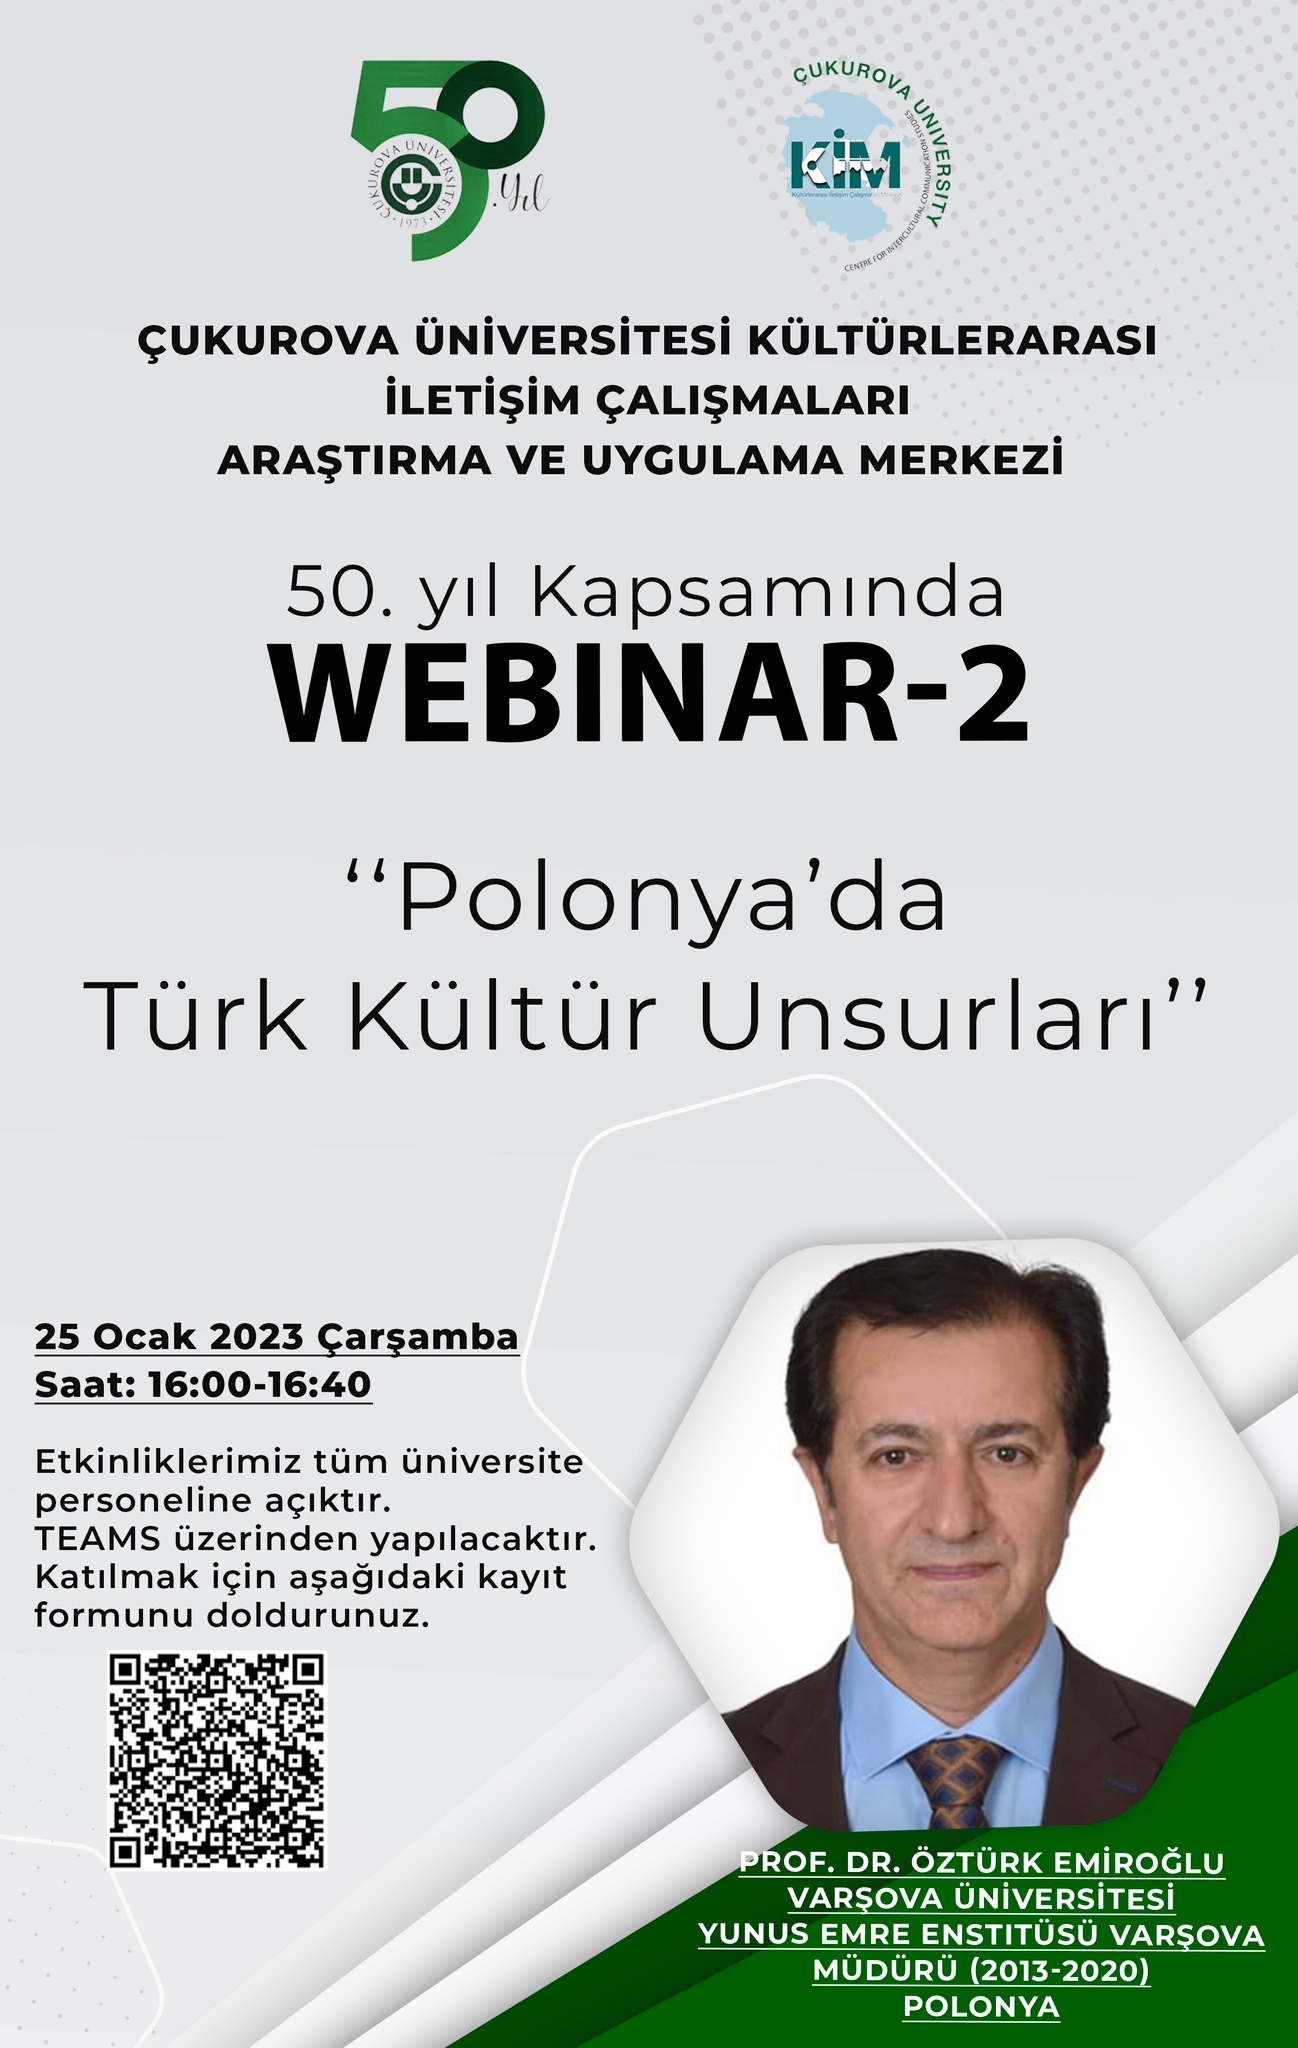 KİM Webinar: Prof. Dr. Öztürk Emiroğlu - "Polonya'da Türk Kültür Unsurları"